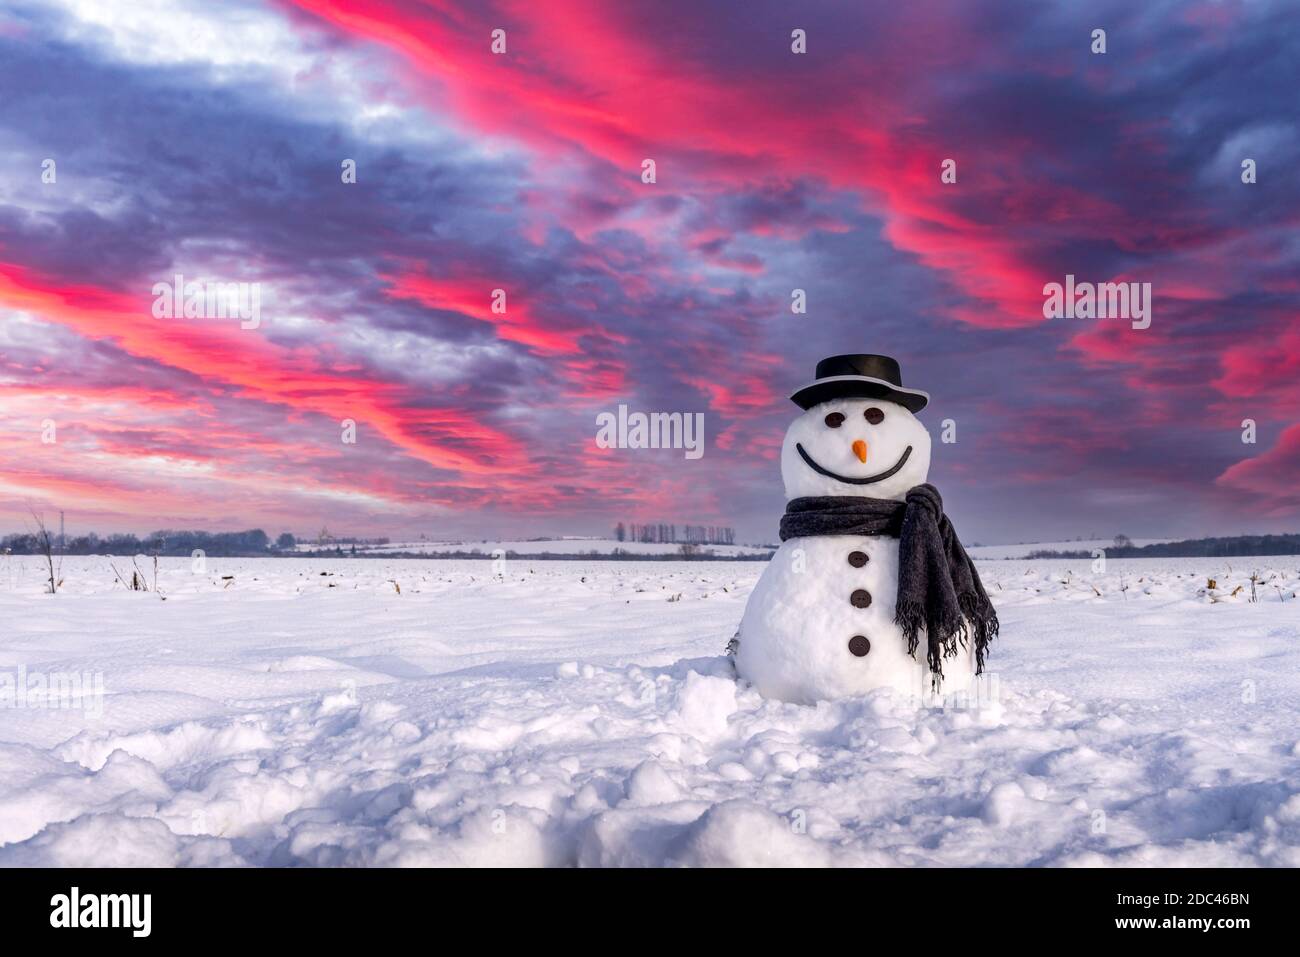 Simpatico pupazzo di neve con cappello elegante e scalpello nero su campo innevato durante il tramonto. Cielo epico con nuvole viola sullo sfondo. Buon Natale e felice anno nuovo! Foto Stock